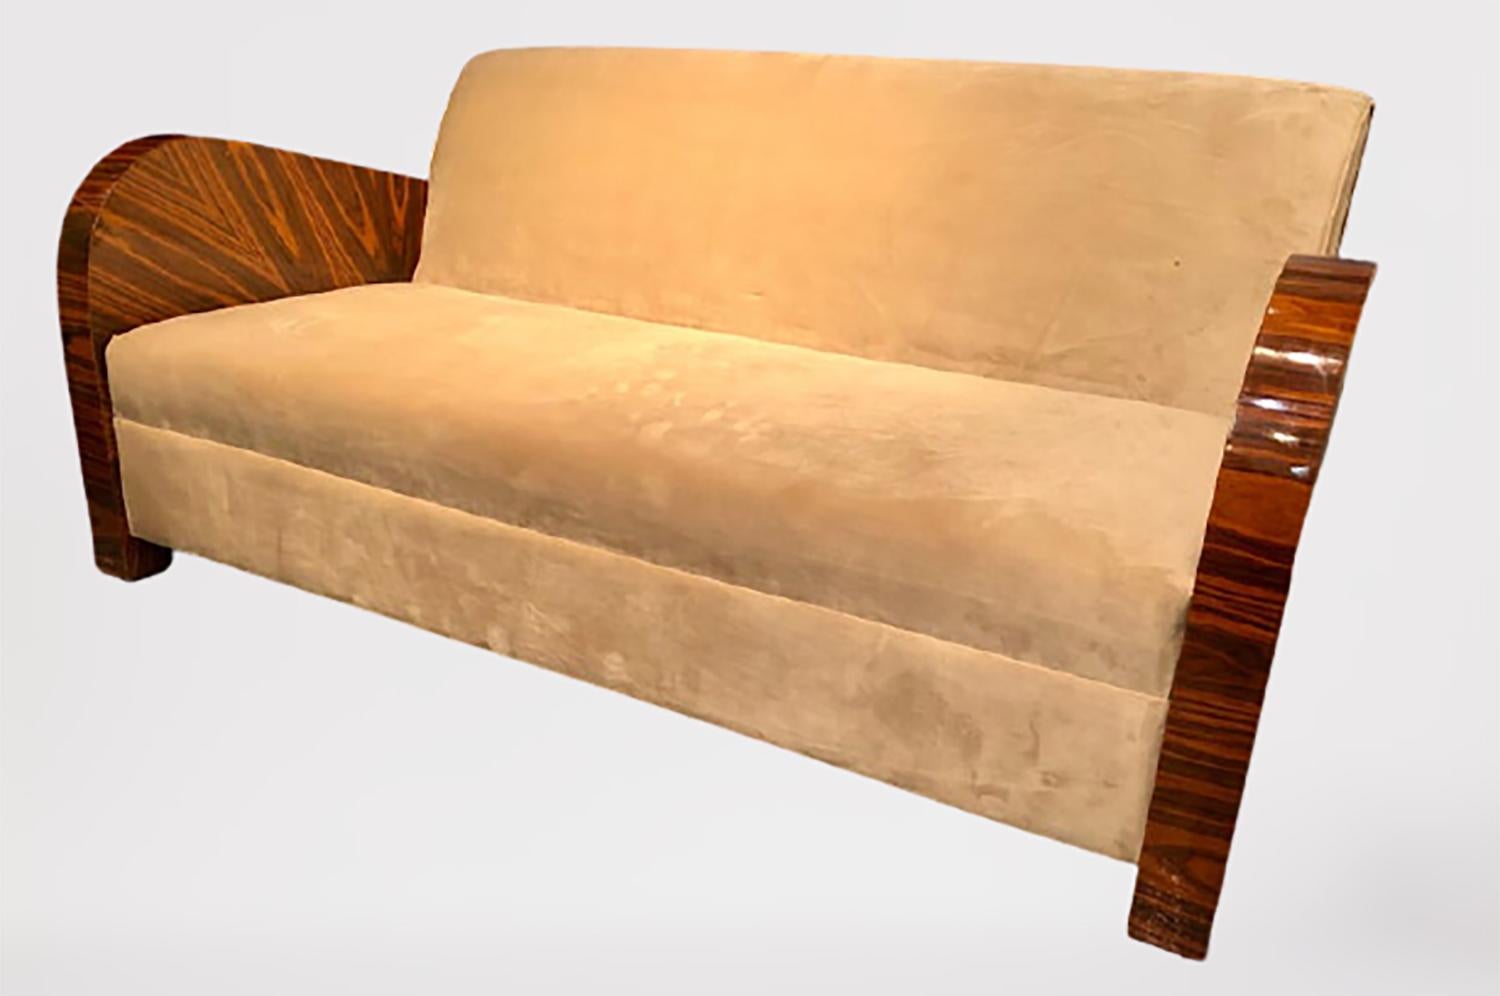 Canapé/couchoir en bois de rose de style Art Déco français, recouvert d'une fine tapisserie de velours et doté d'accoudoirs en bois de rose laqué. Ce magnifique canapé ou cette grande causeuse ne manquera pas d'apporter du charme à n'importe quelle